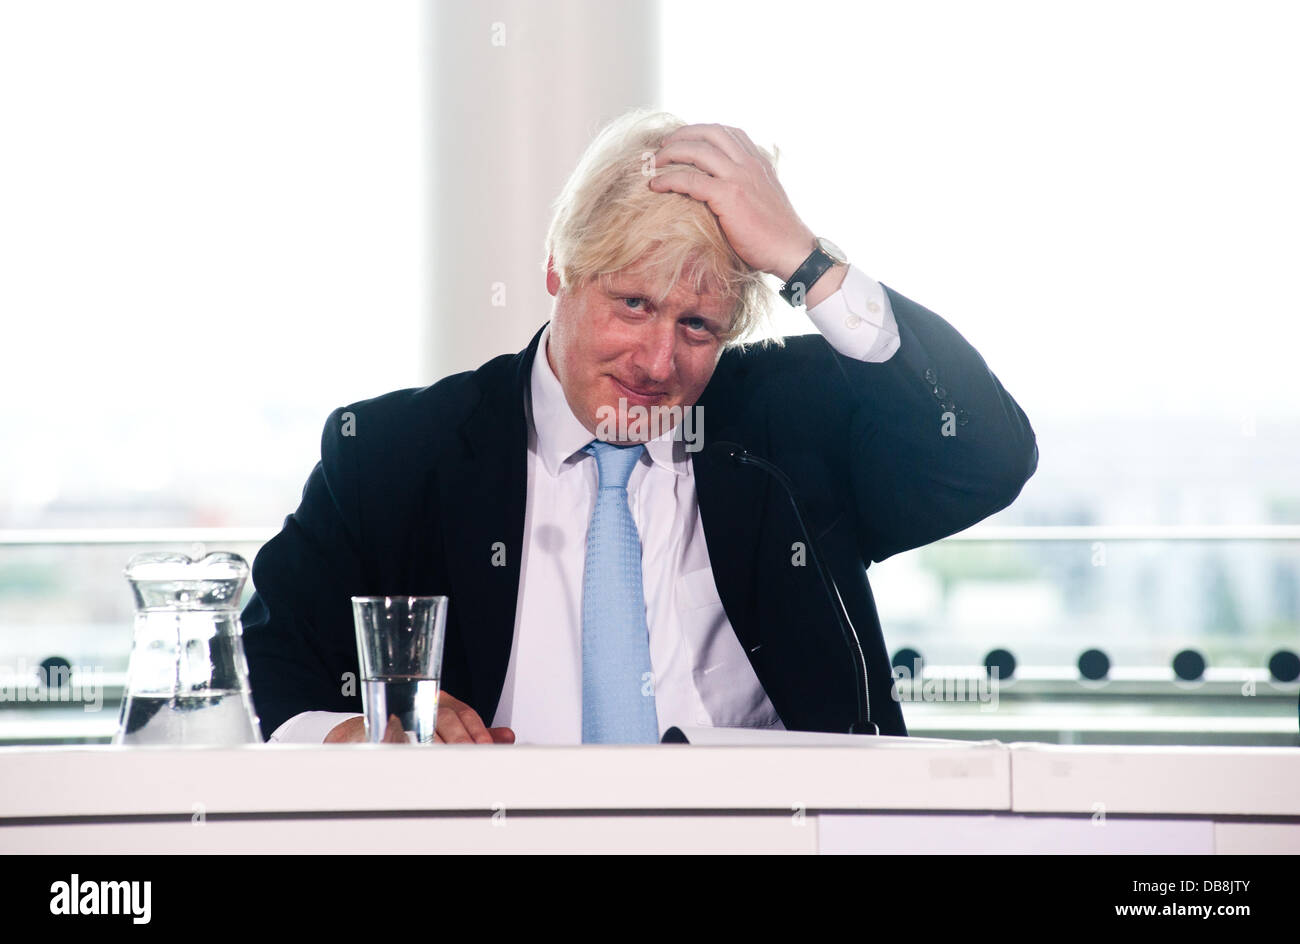 Londres, Reino Unido - 25 de julio de 2013: el Alcalde de Londres, Boris Johnson, que toca su cabello durante la conferencia de prensa para examinar el legado del Londres de los Juegos Olímpicos y Paralímpicos. Crédito: Piero Cruciatti/Alamy Live News Foto de stock